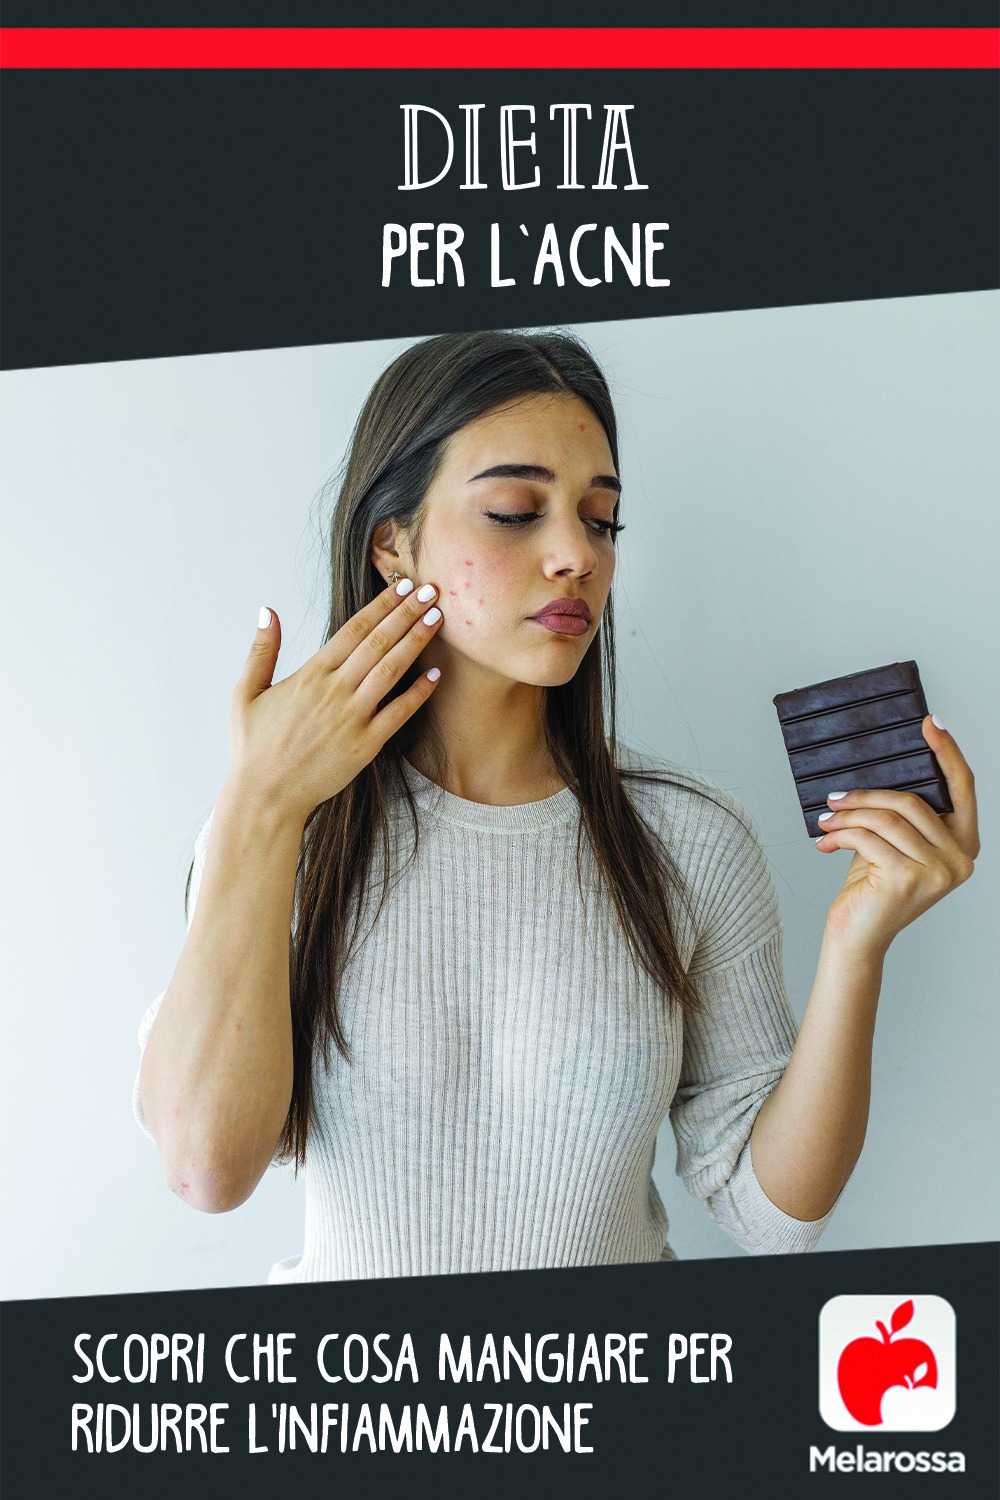 dieta per l'acne: cosa mangiare e cosa evitare